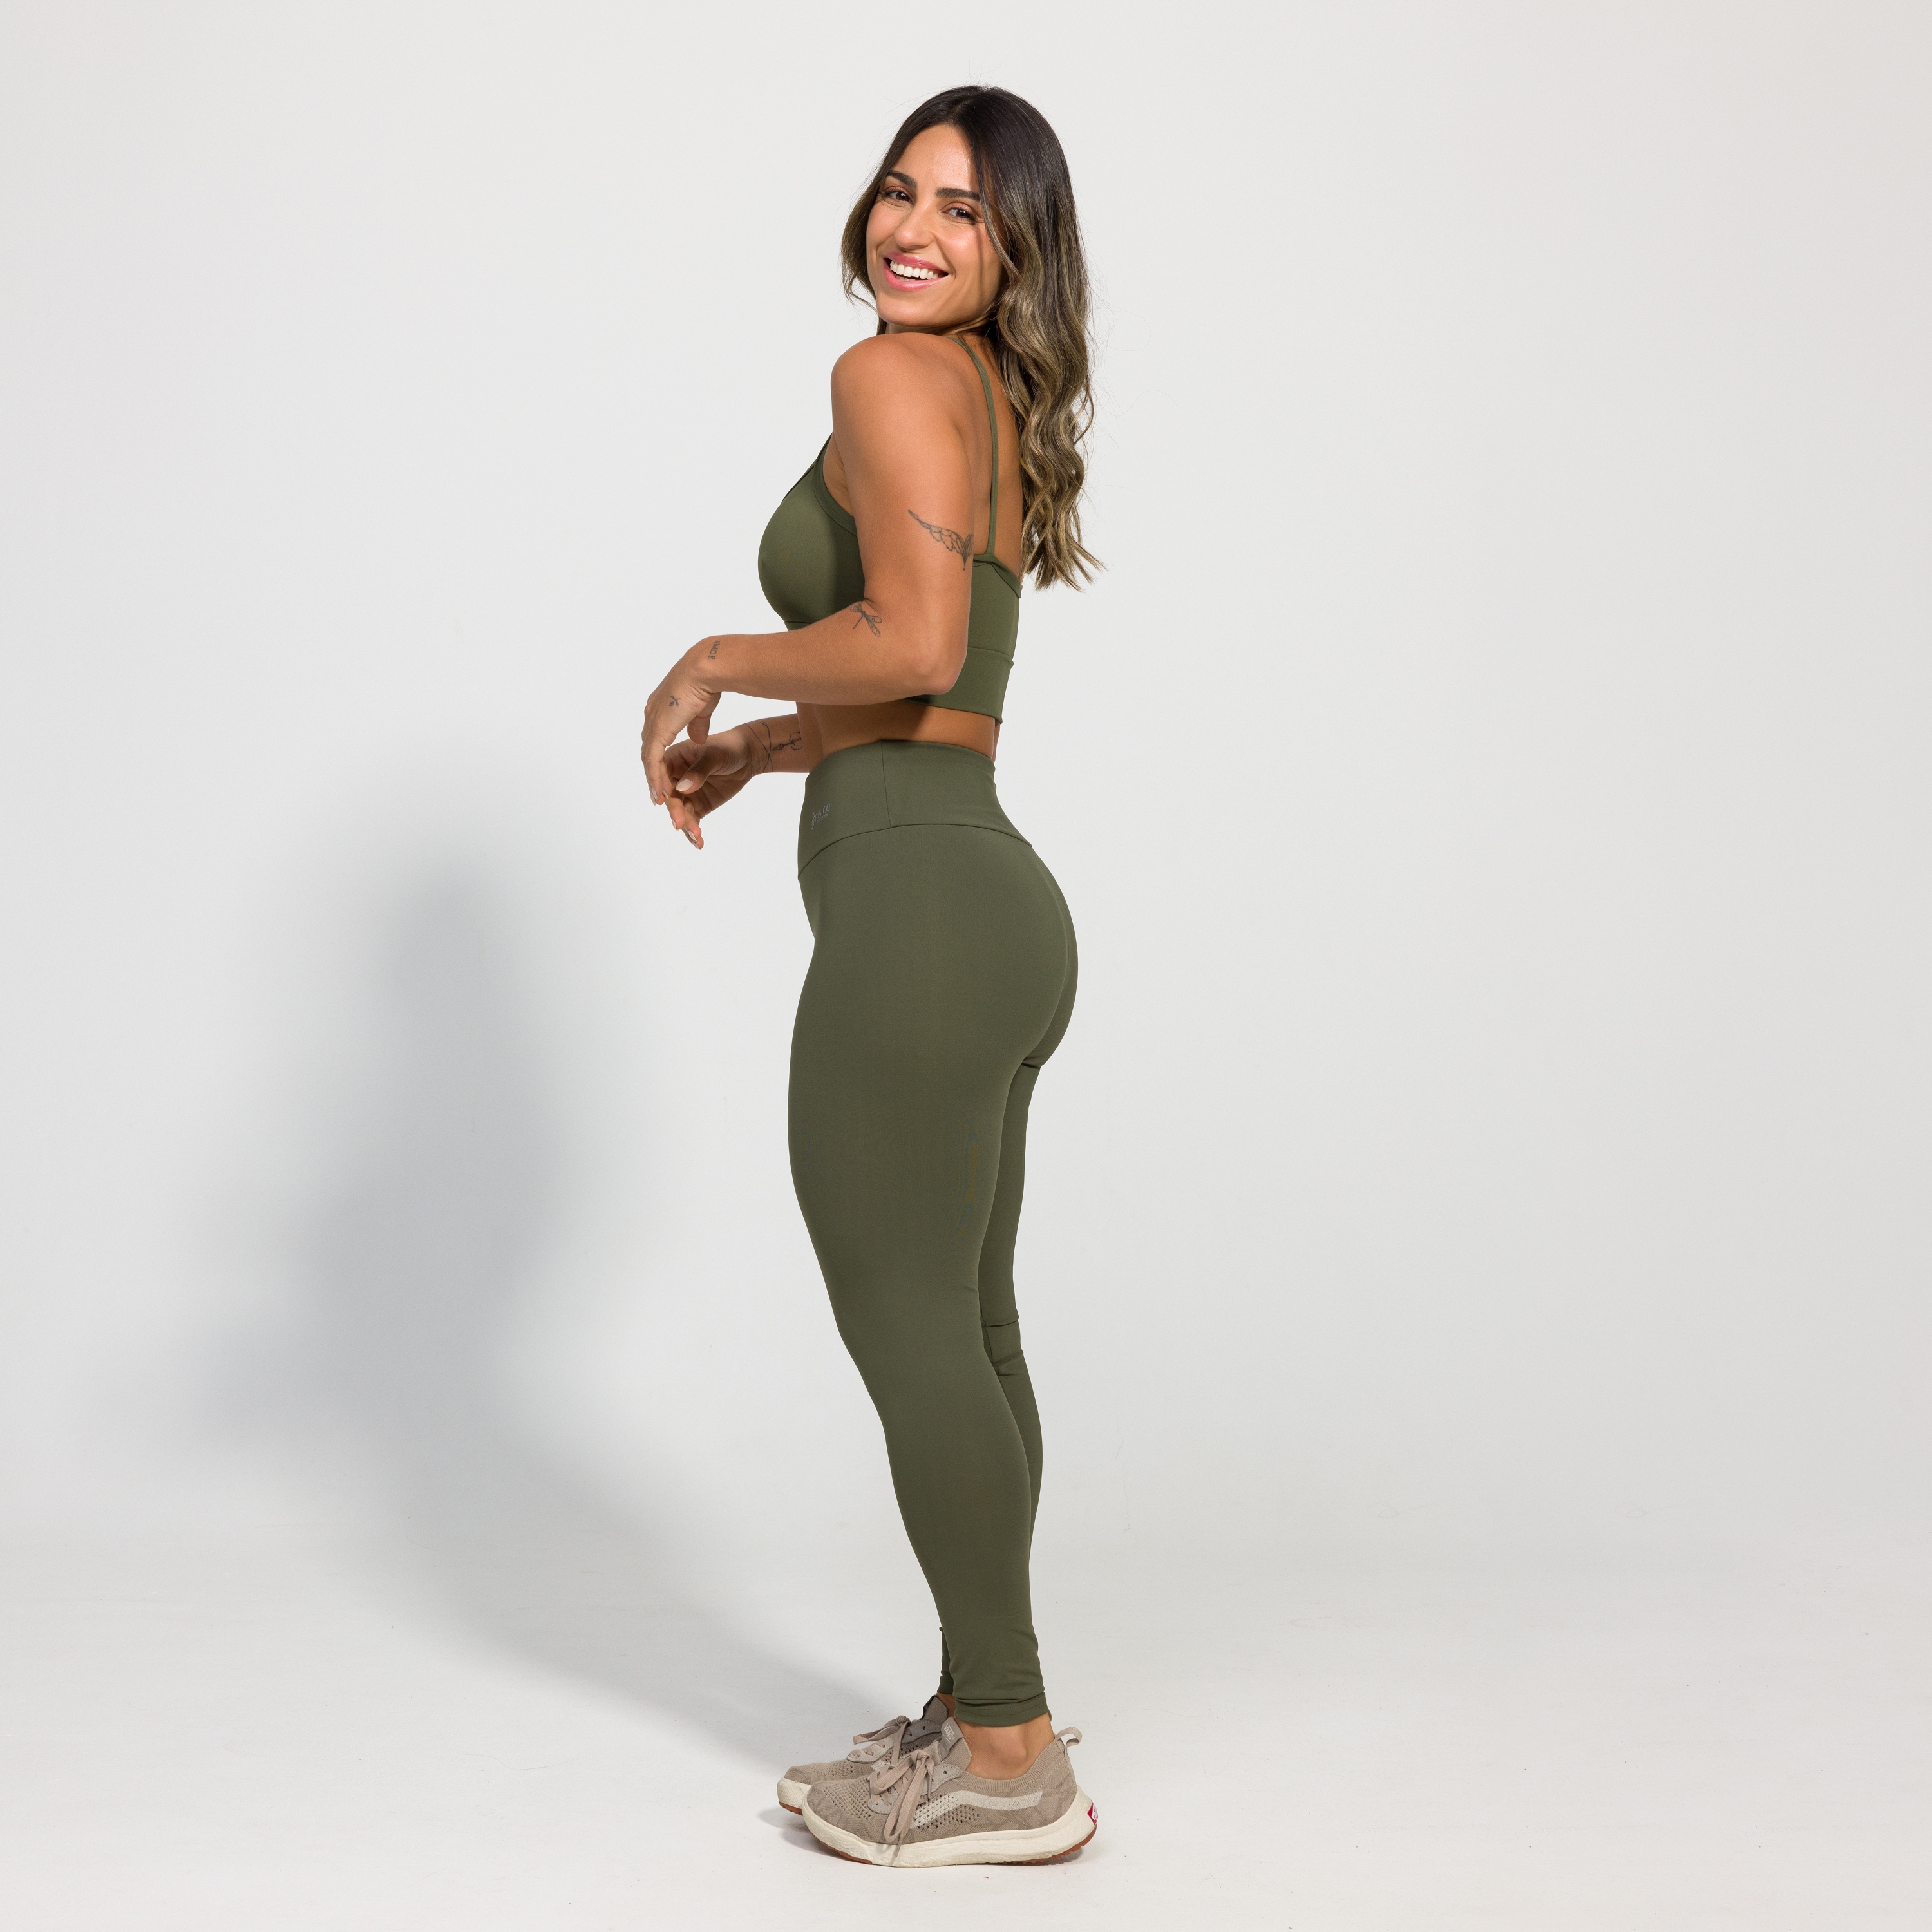 Legging Fitness Feminina Estampa Digital Plus Size